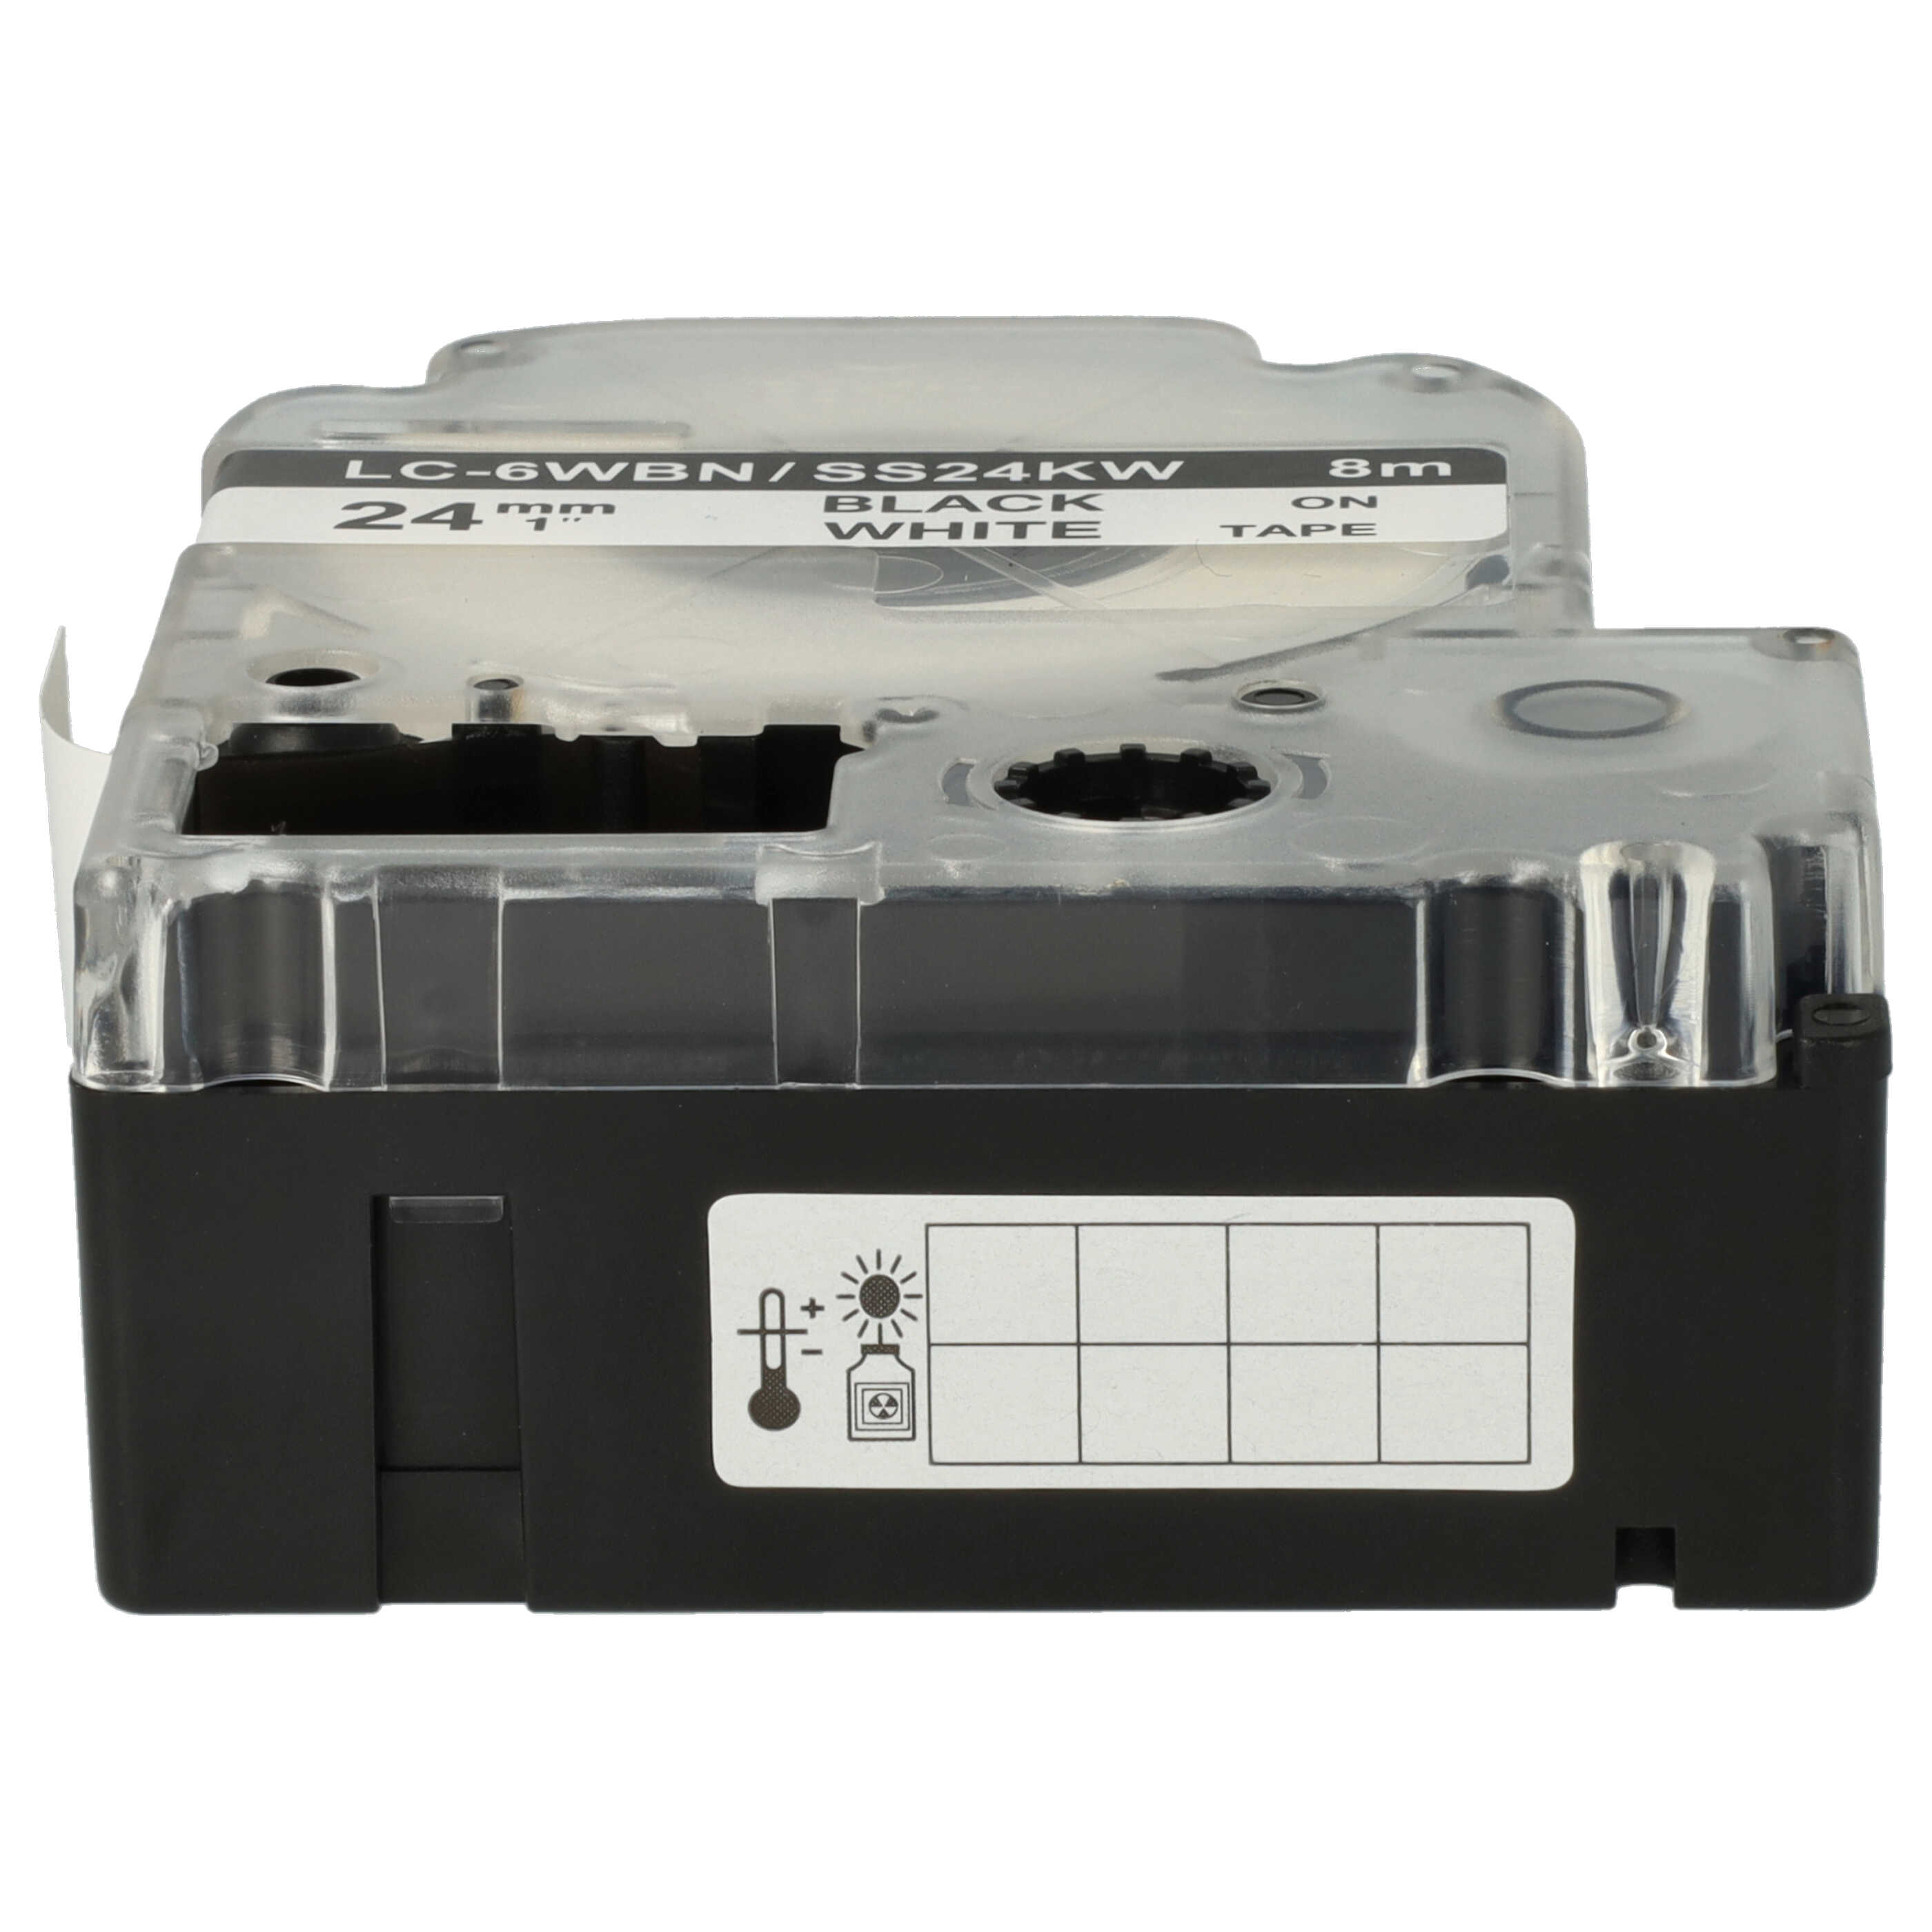 5x Schriftband als Ersatz für Epson LC-6WBN - 24mm Schwarz auf Weiß